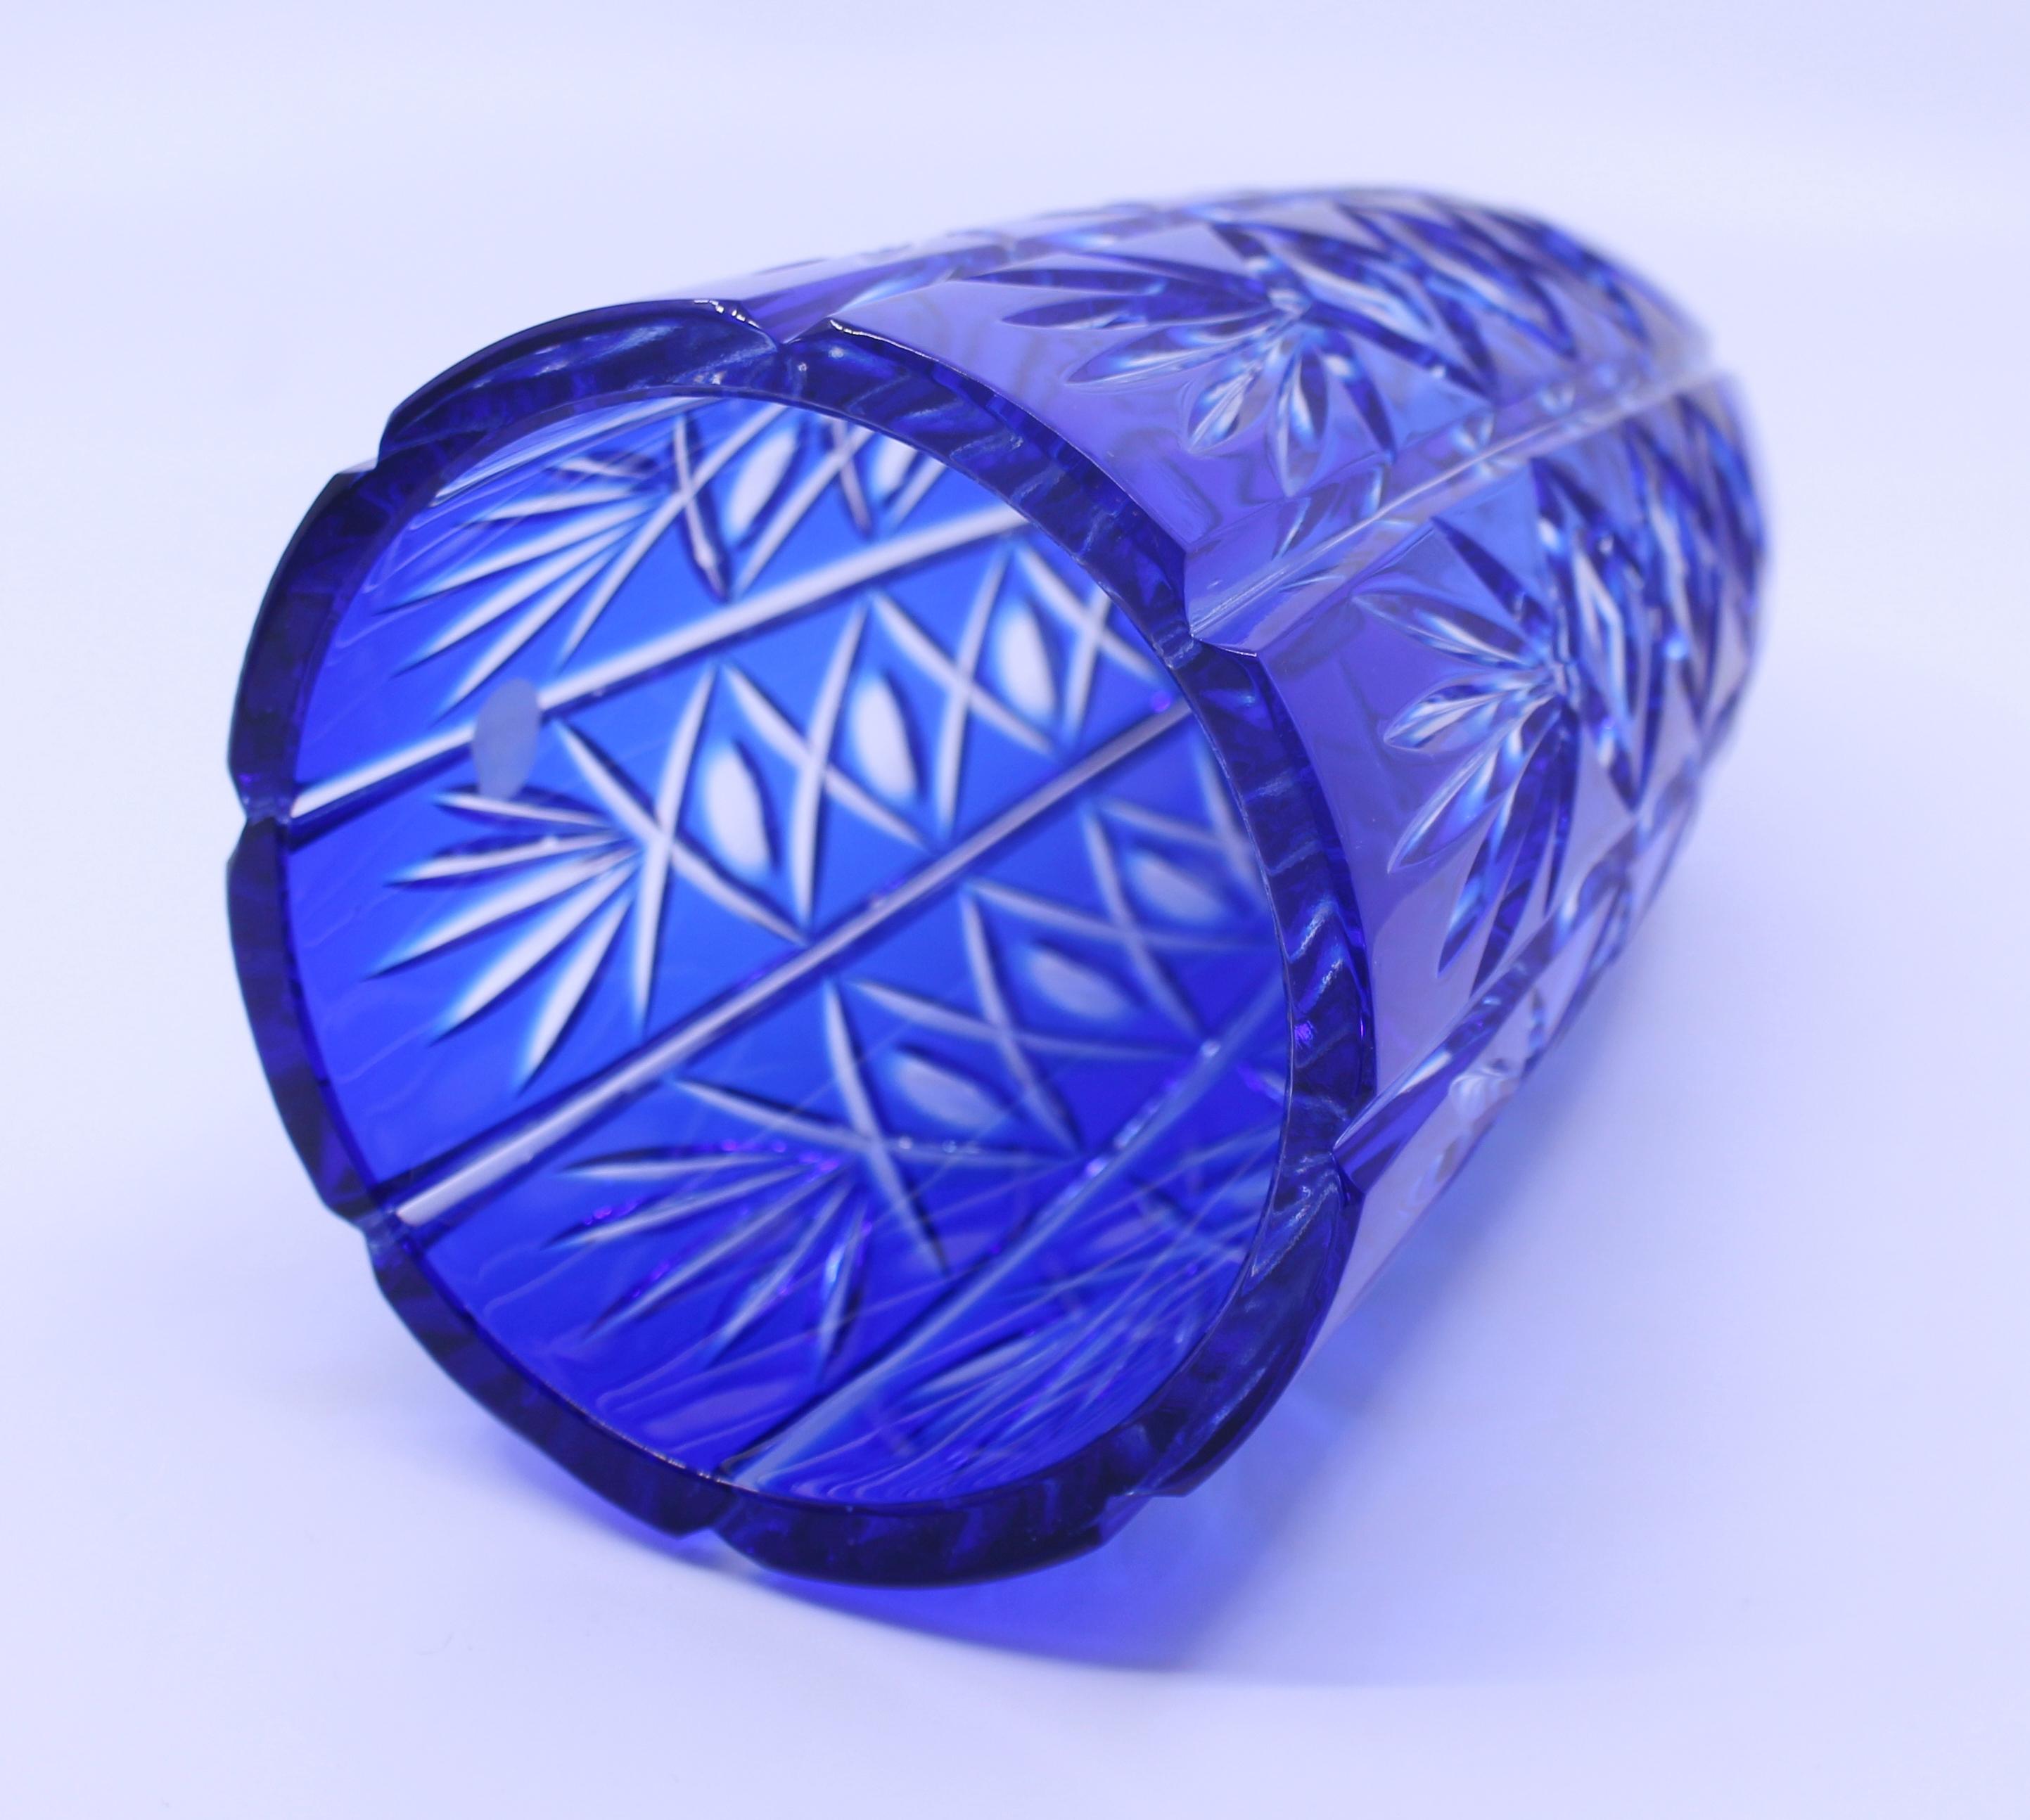 English Vintage Blue Overlay Crystal Glass Vase For Sale 1